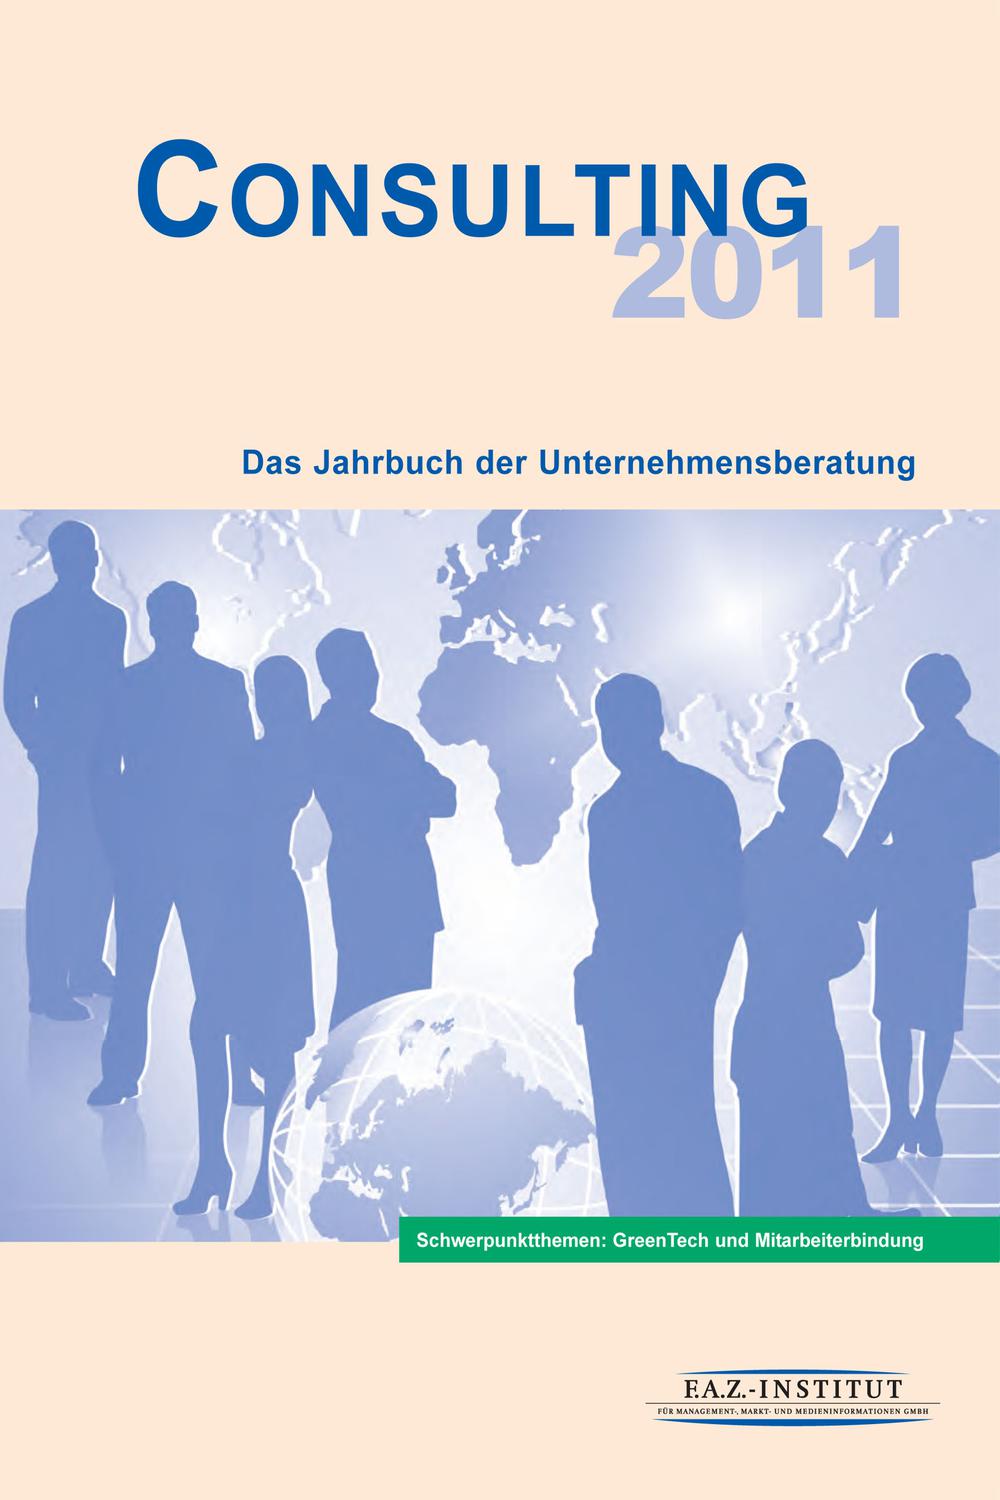 Consulting 2011 - Markt- und Medieninformationen F.A.Z.-Institut für Management-, Markt- und Medieninformationen